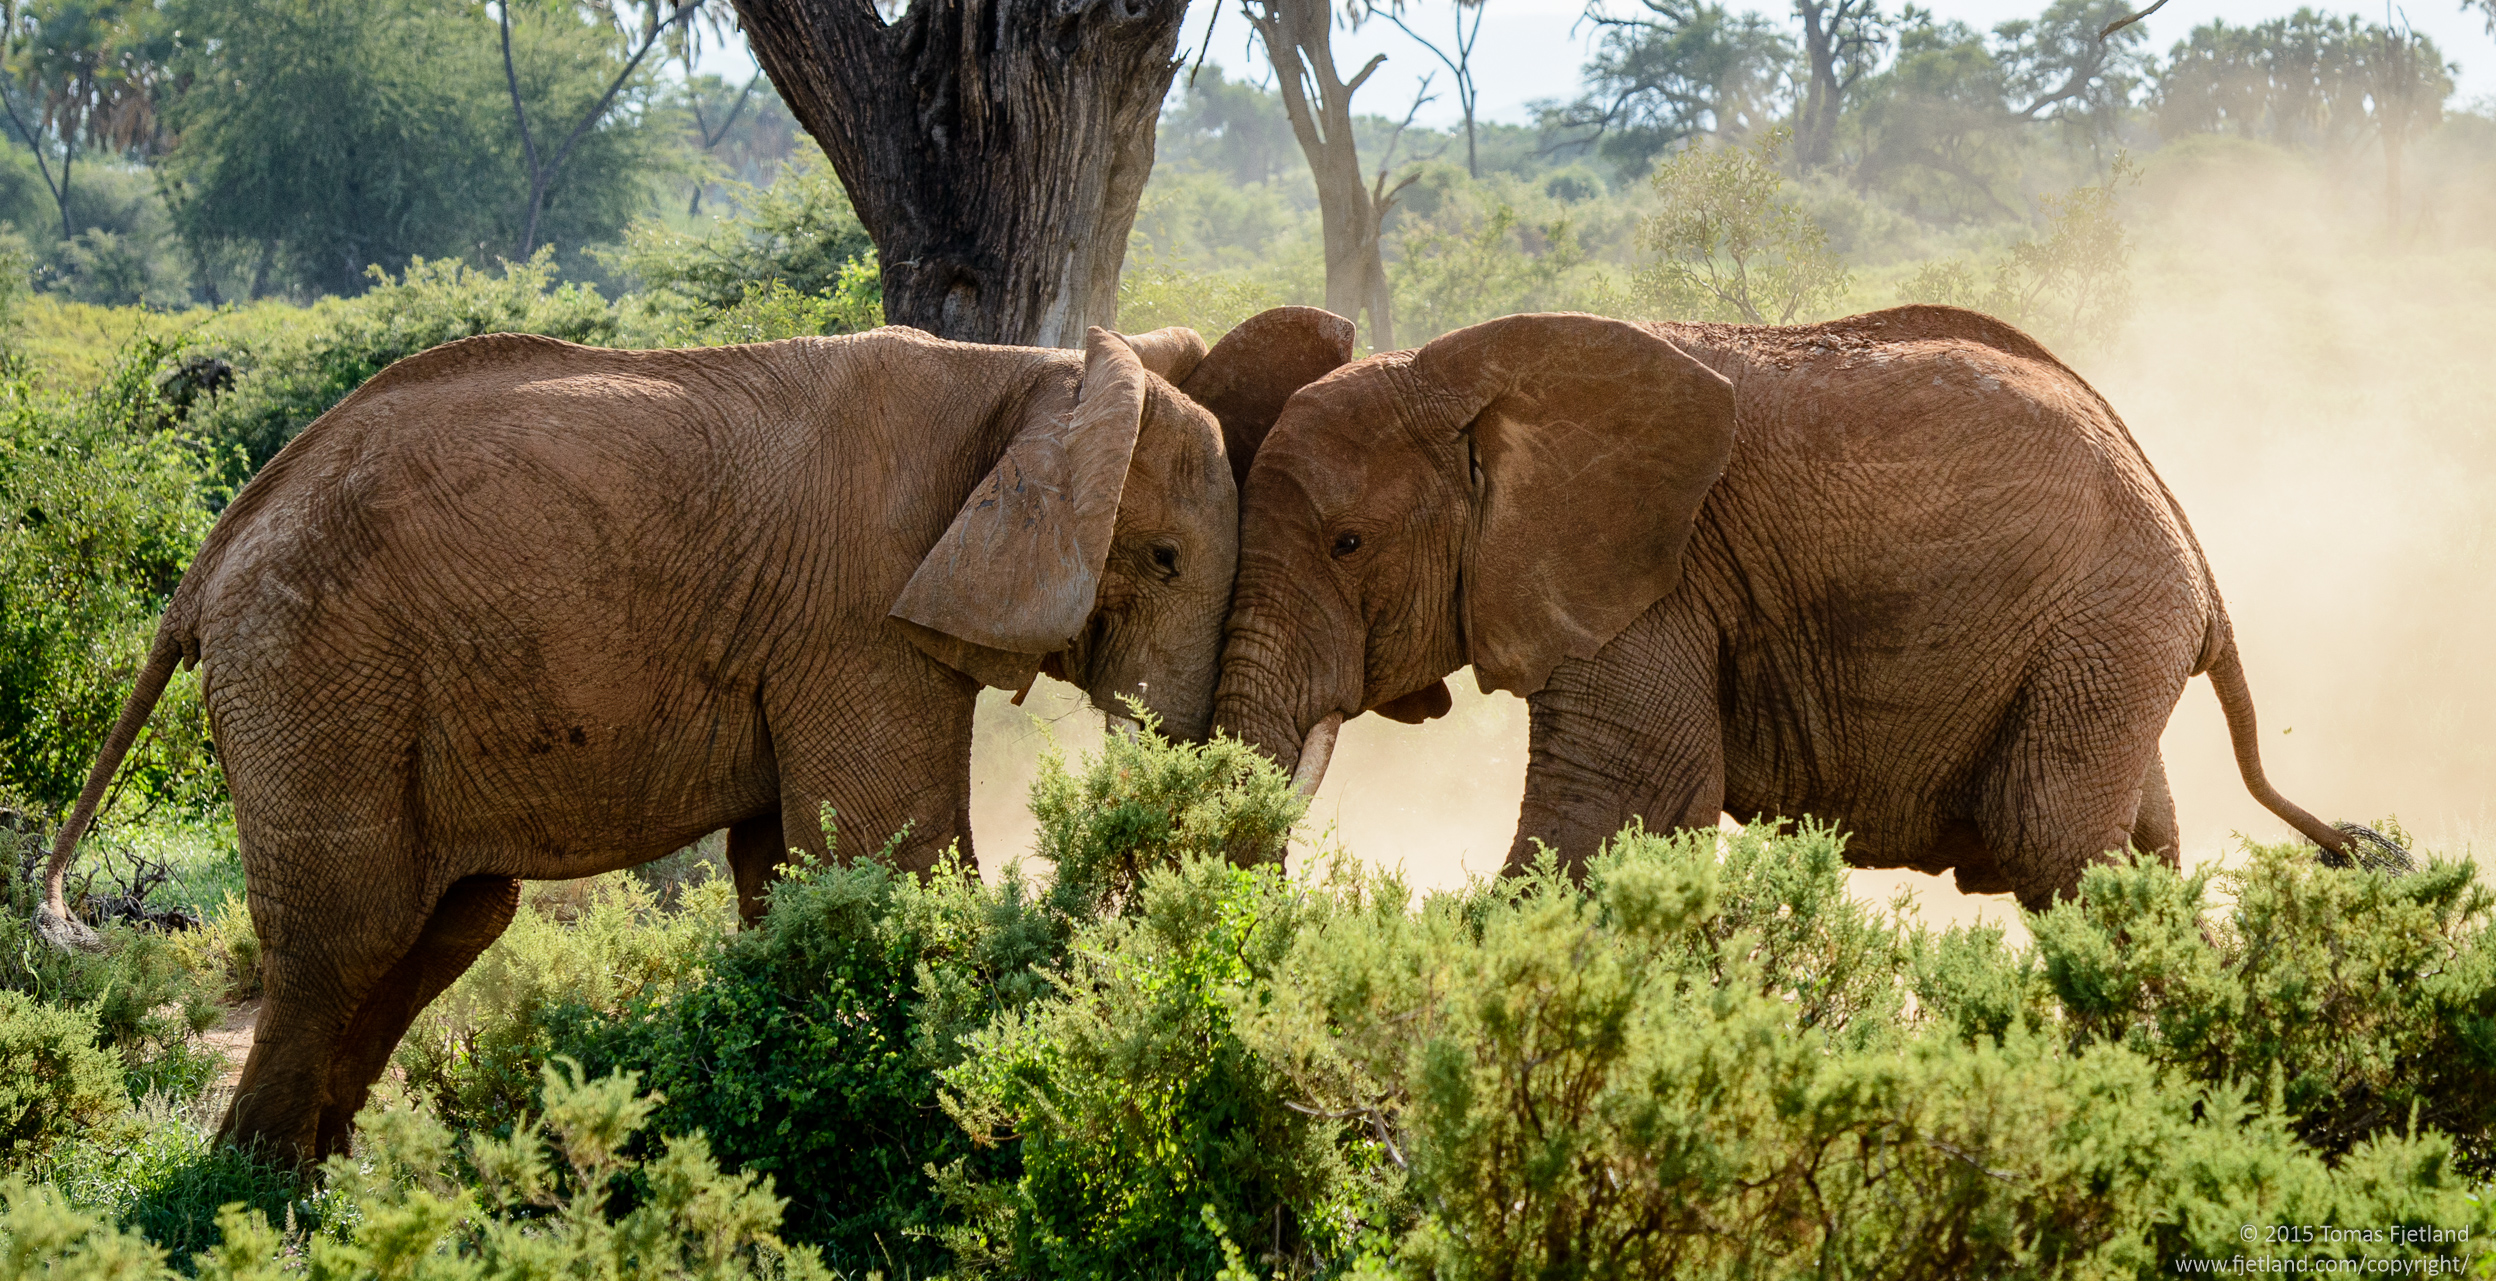 Elephant bulls going head to head in a clearing in Samburu.